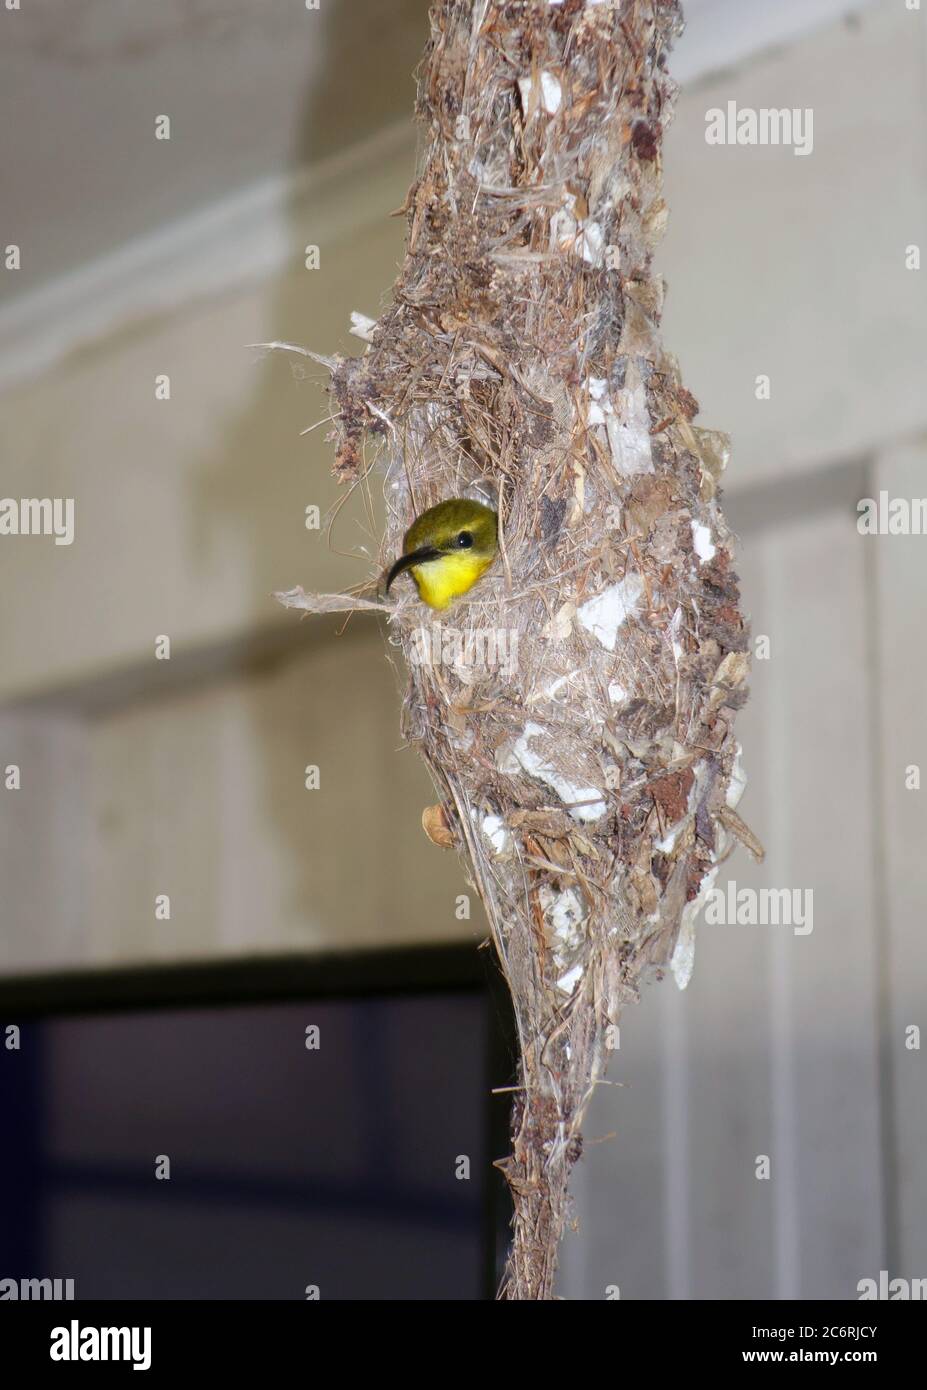 sunbird femelle à dos olive (Cinnyris jugularis) sur des œufs dans un nid suspendu à l'intérieur d'un Queenslander Cottage, Cairns, Queensland, Australie. Pas de PR Banque D'Images